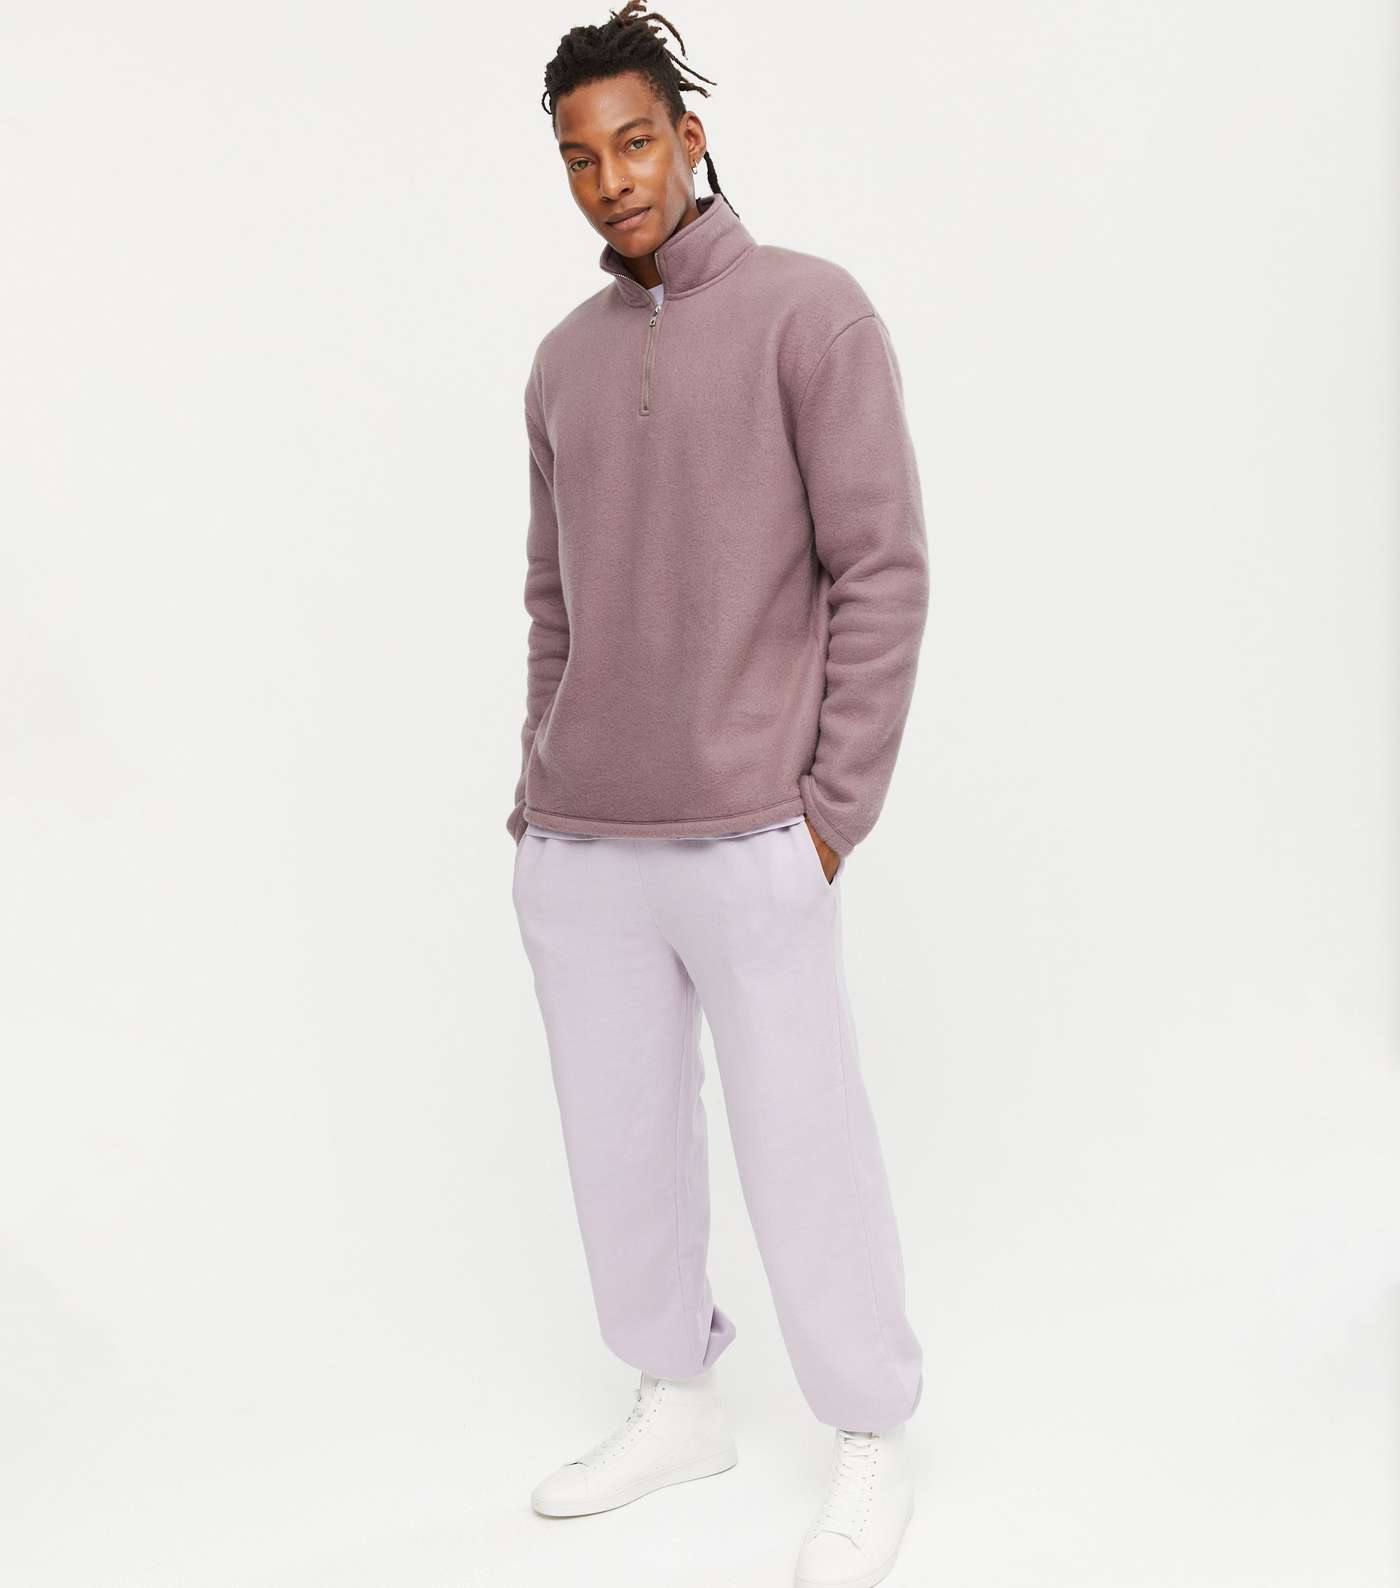 Lilac Fleece Zip Neck Long Sleeve Sweatshirt Image 2